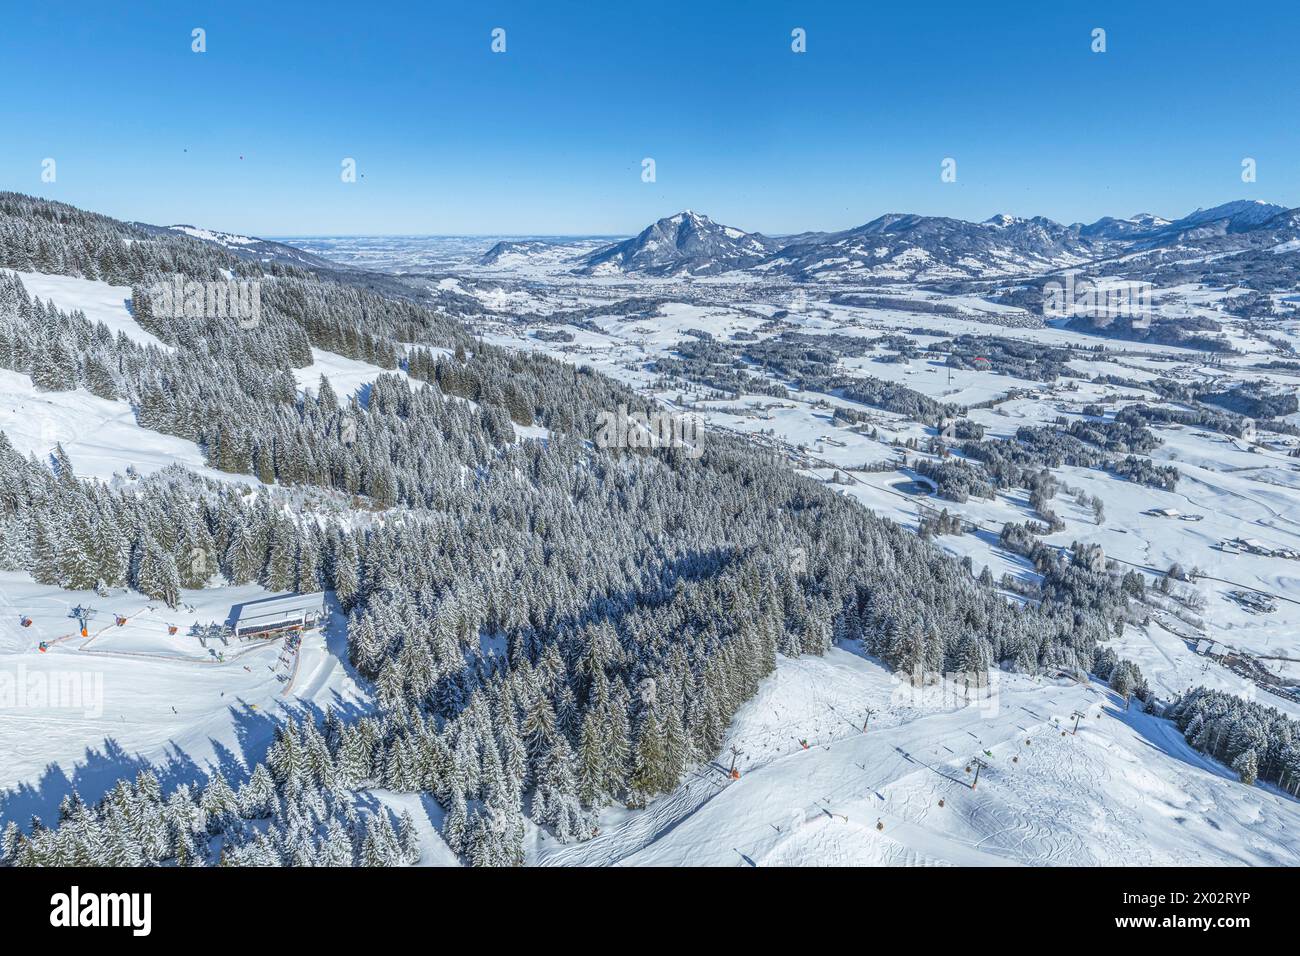 Herrliche Bedingungen für Wintersport im Skigebiet am Bolsterlanger Horn im Allgäu Ausblick auf das winterlich verschneite Oberallgäu rund um Bols Bol Foto Stock